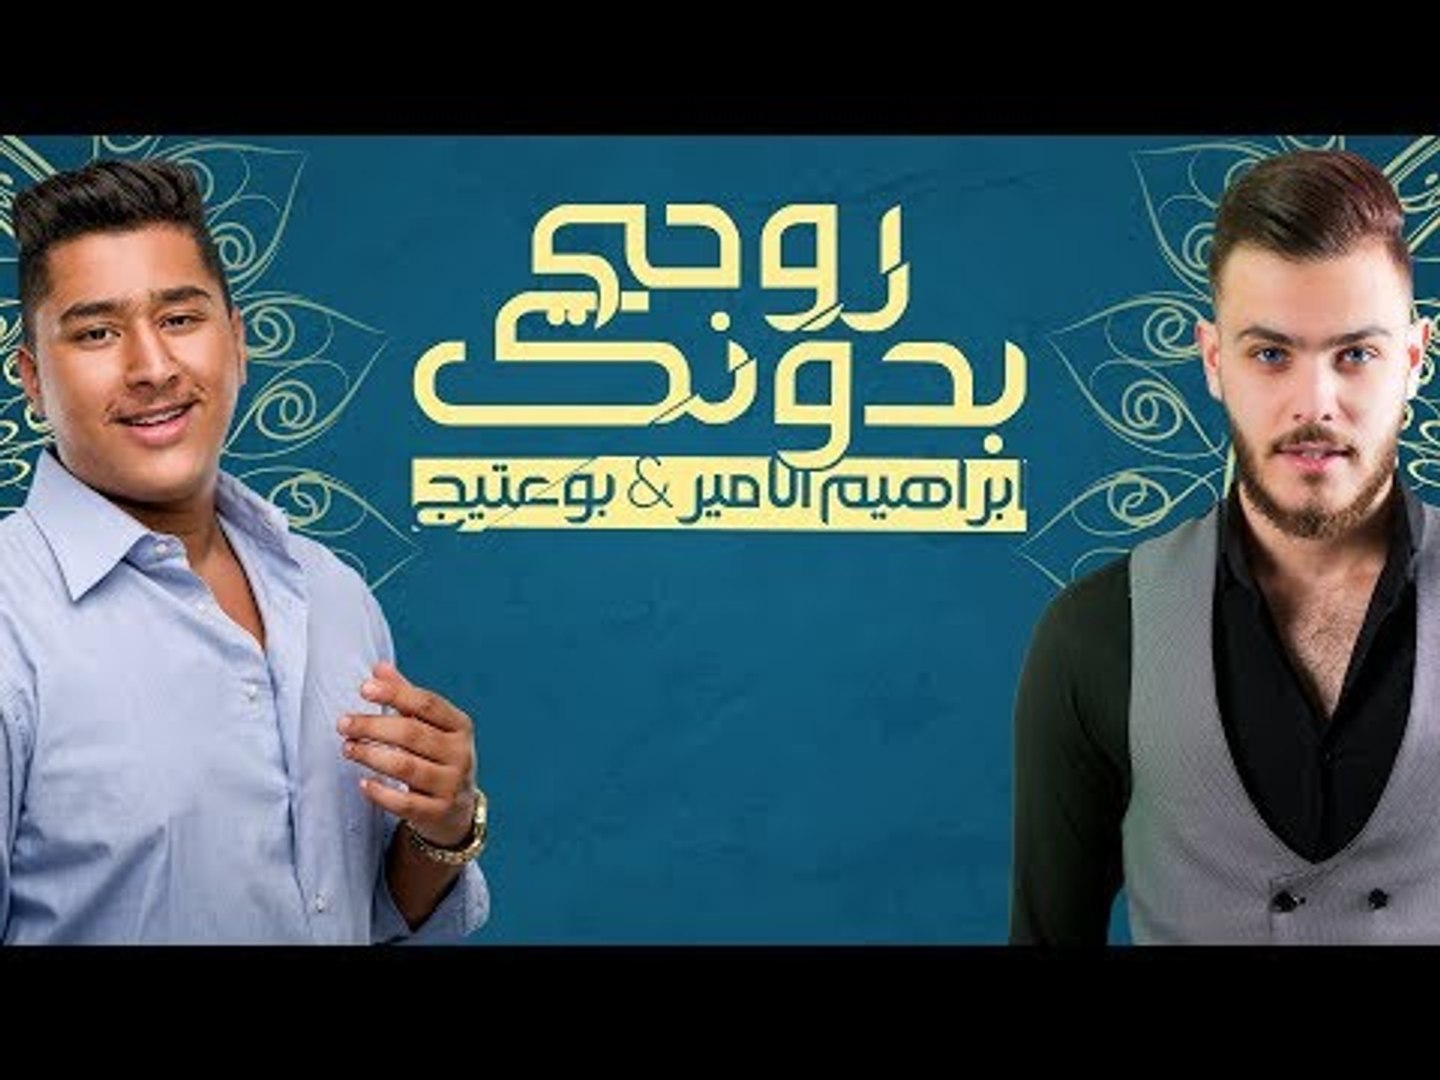 Bo 3atej & Ibrahem Al Amer – Rohe Bedonk |بو عتيج وابراهيم الامير - روحي  بدونك |2017 - فيديو Dailymotion